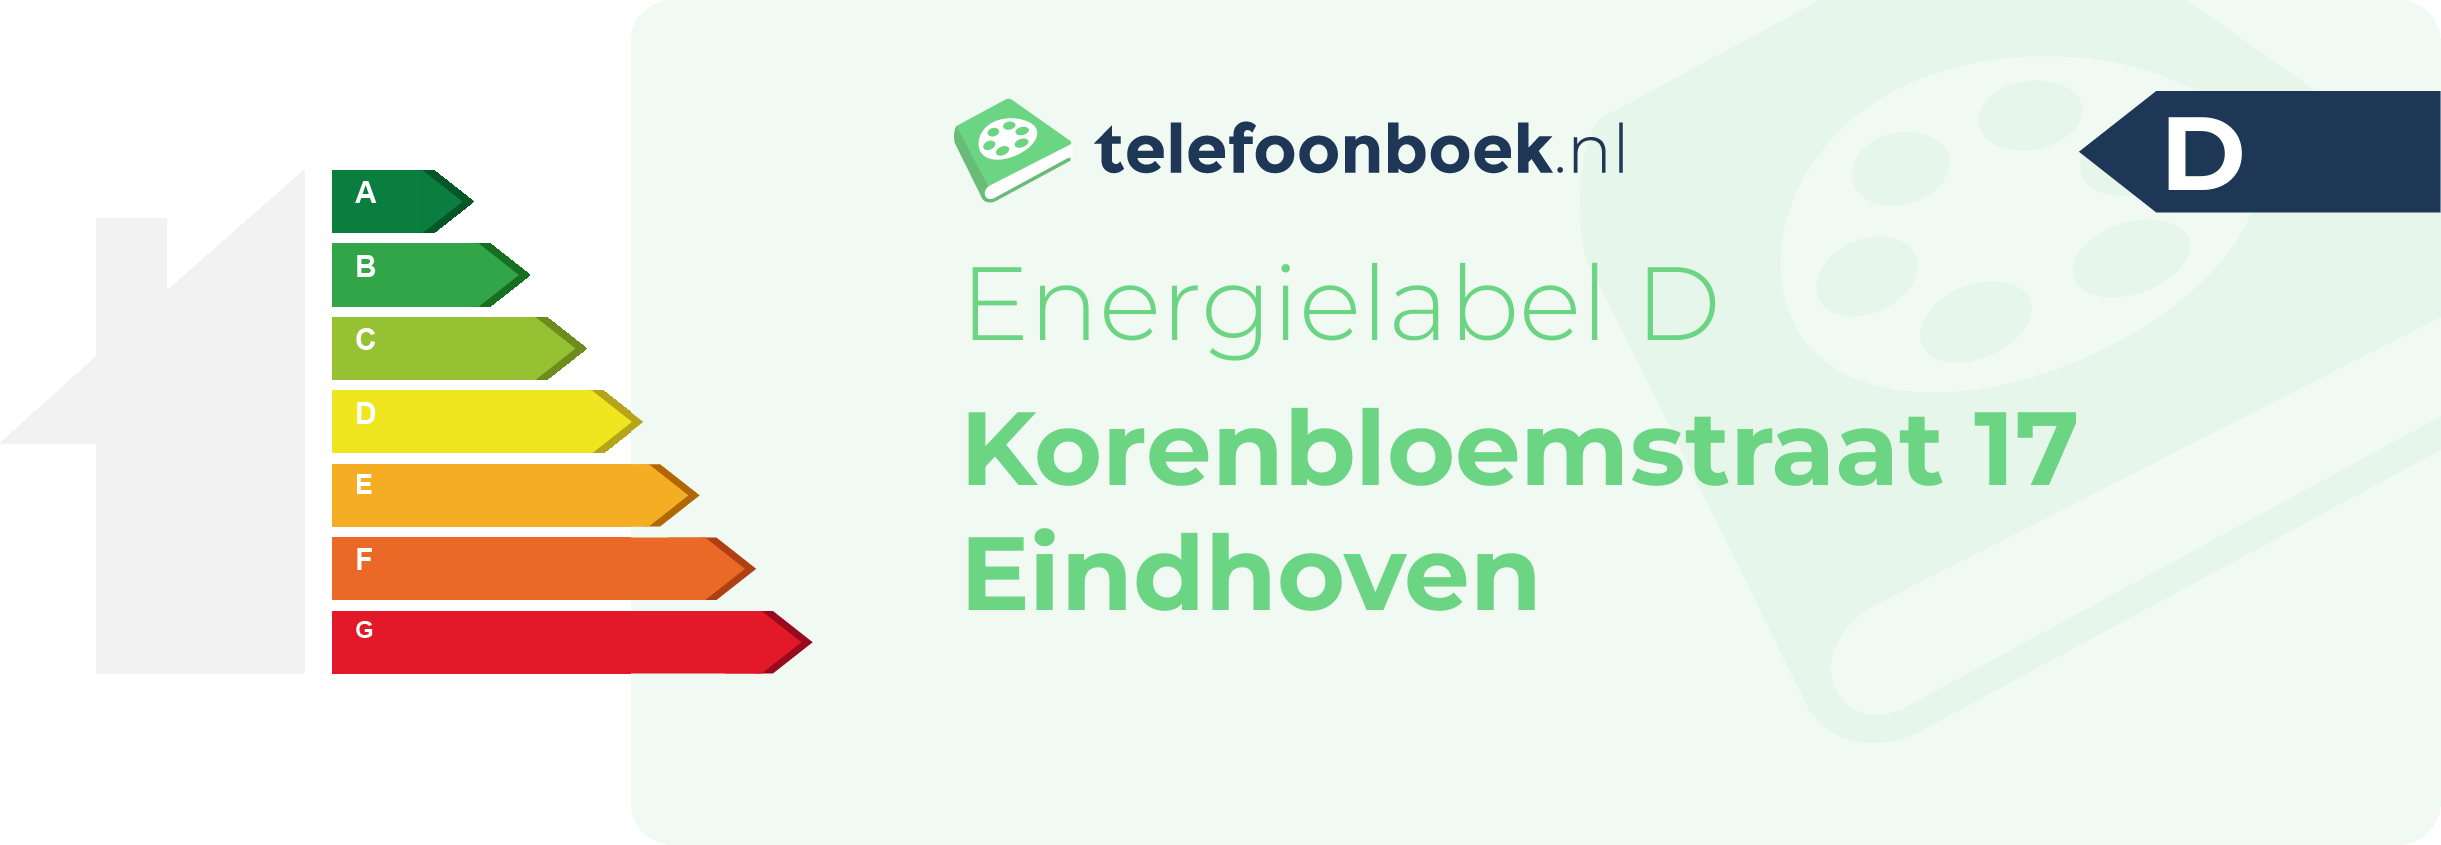 Energielabel Korenbloemstraat 17 Eindhoven